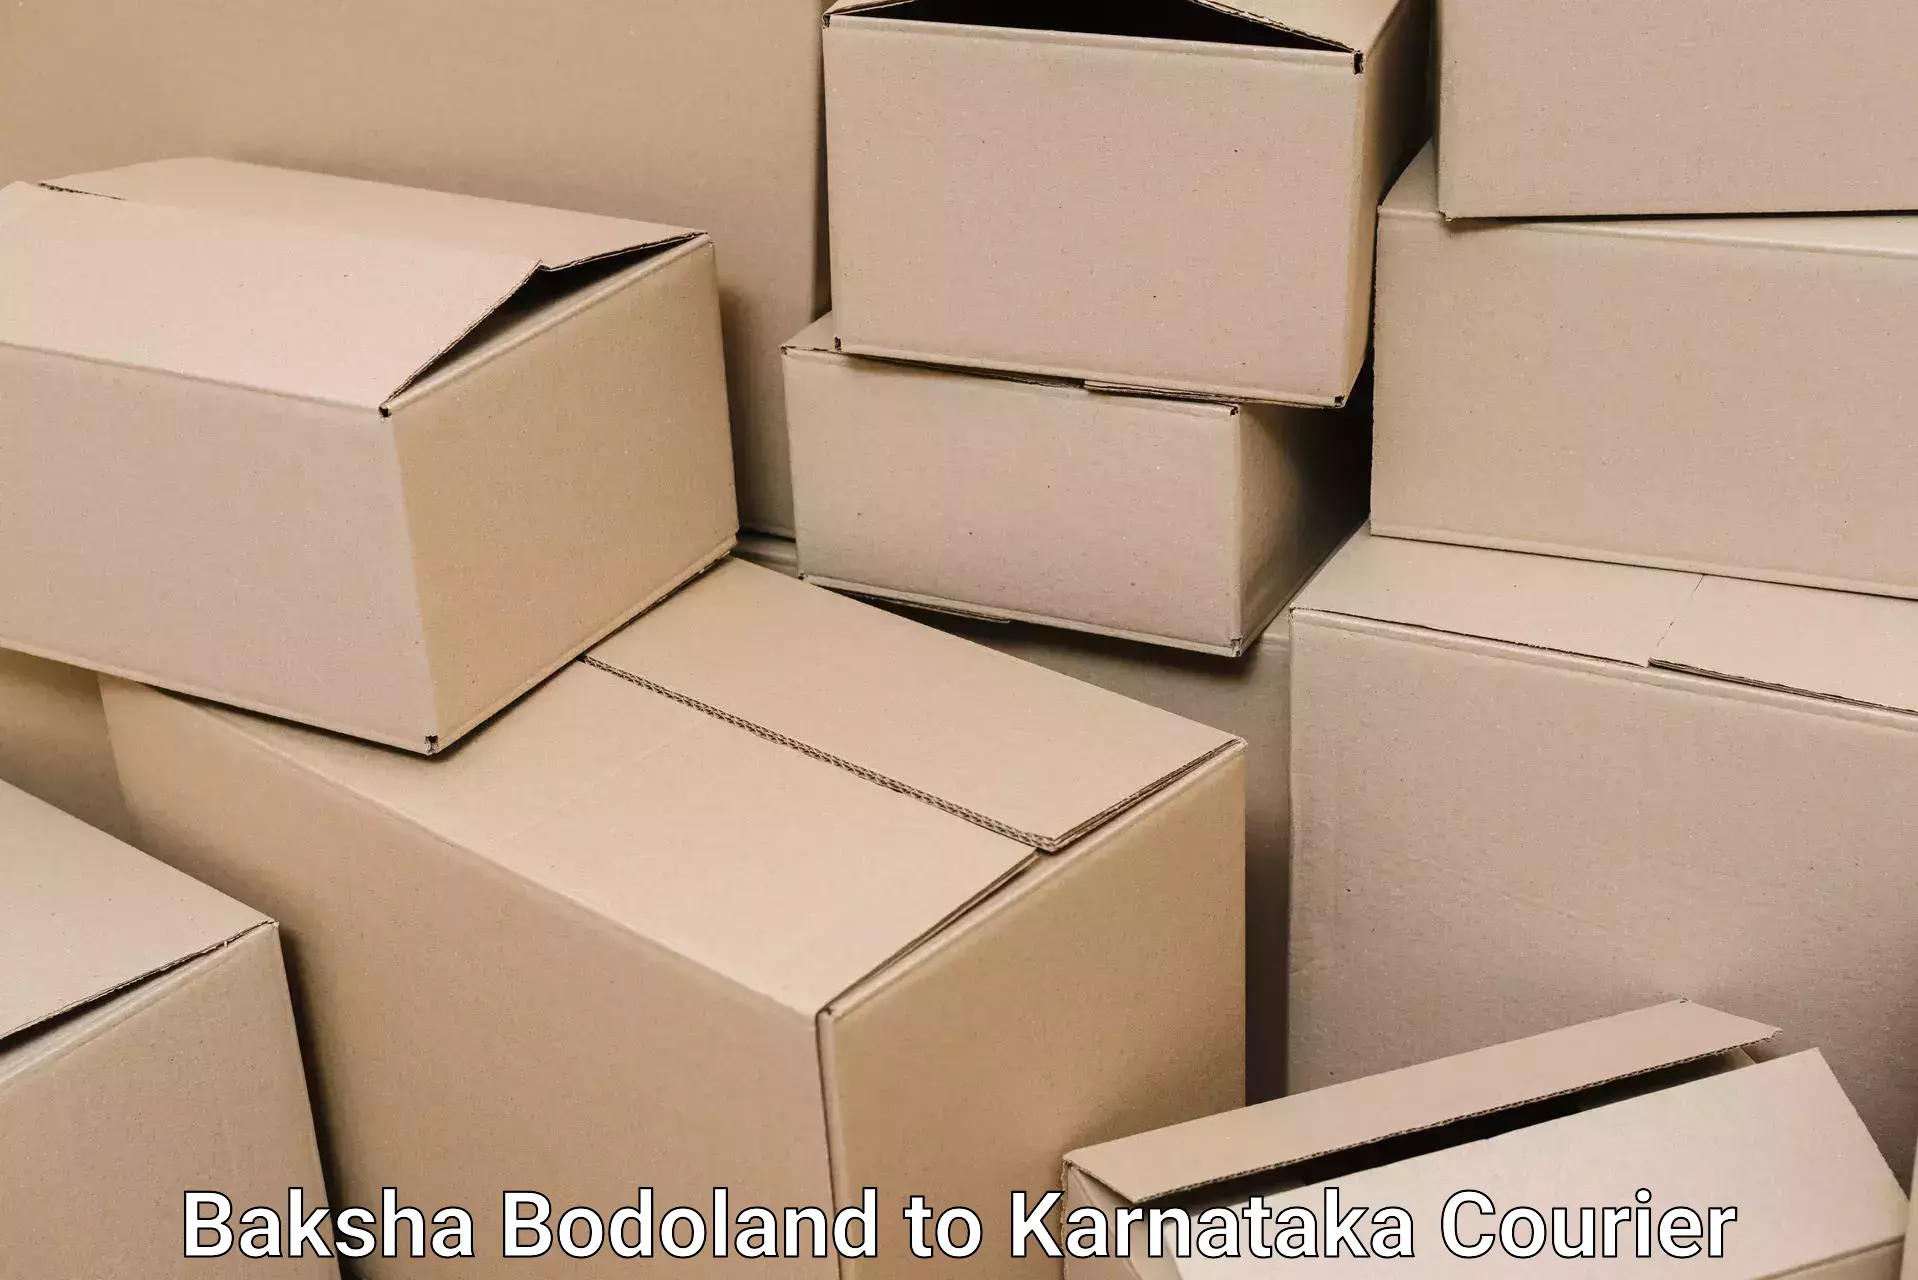 Professional moving company Baksha Bodoland to Bhatkal